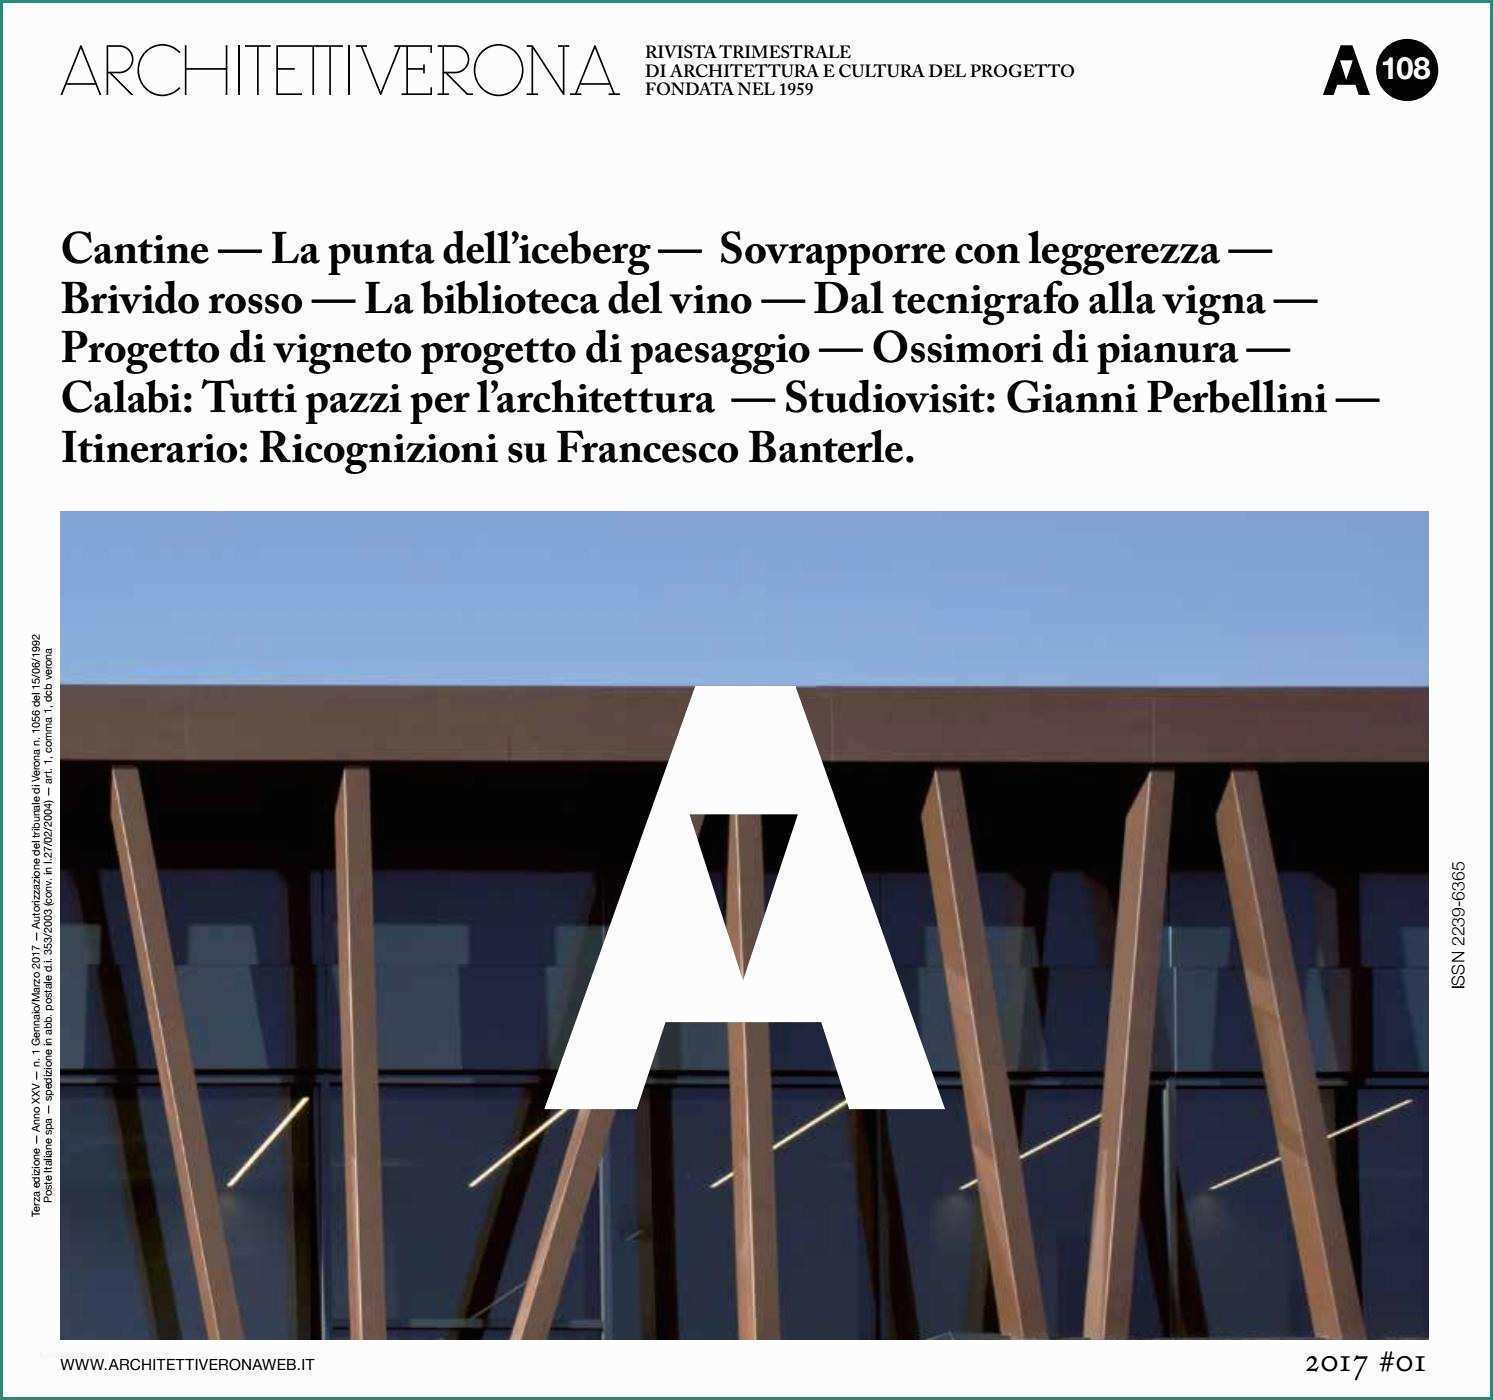 Carrello Saliscale Elettrico Usato E Architettiverona 108 by Architettiverona issuu